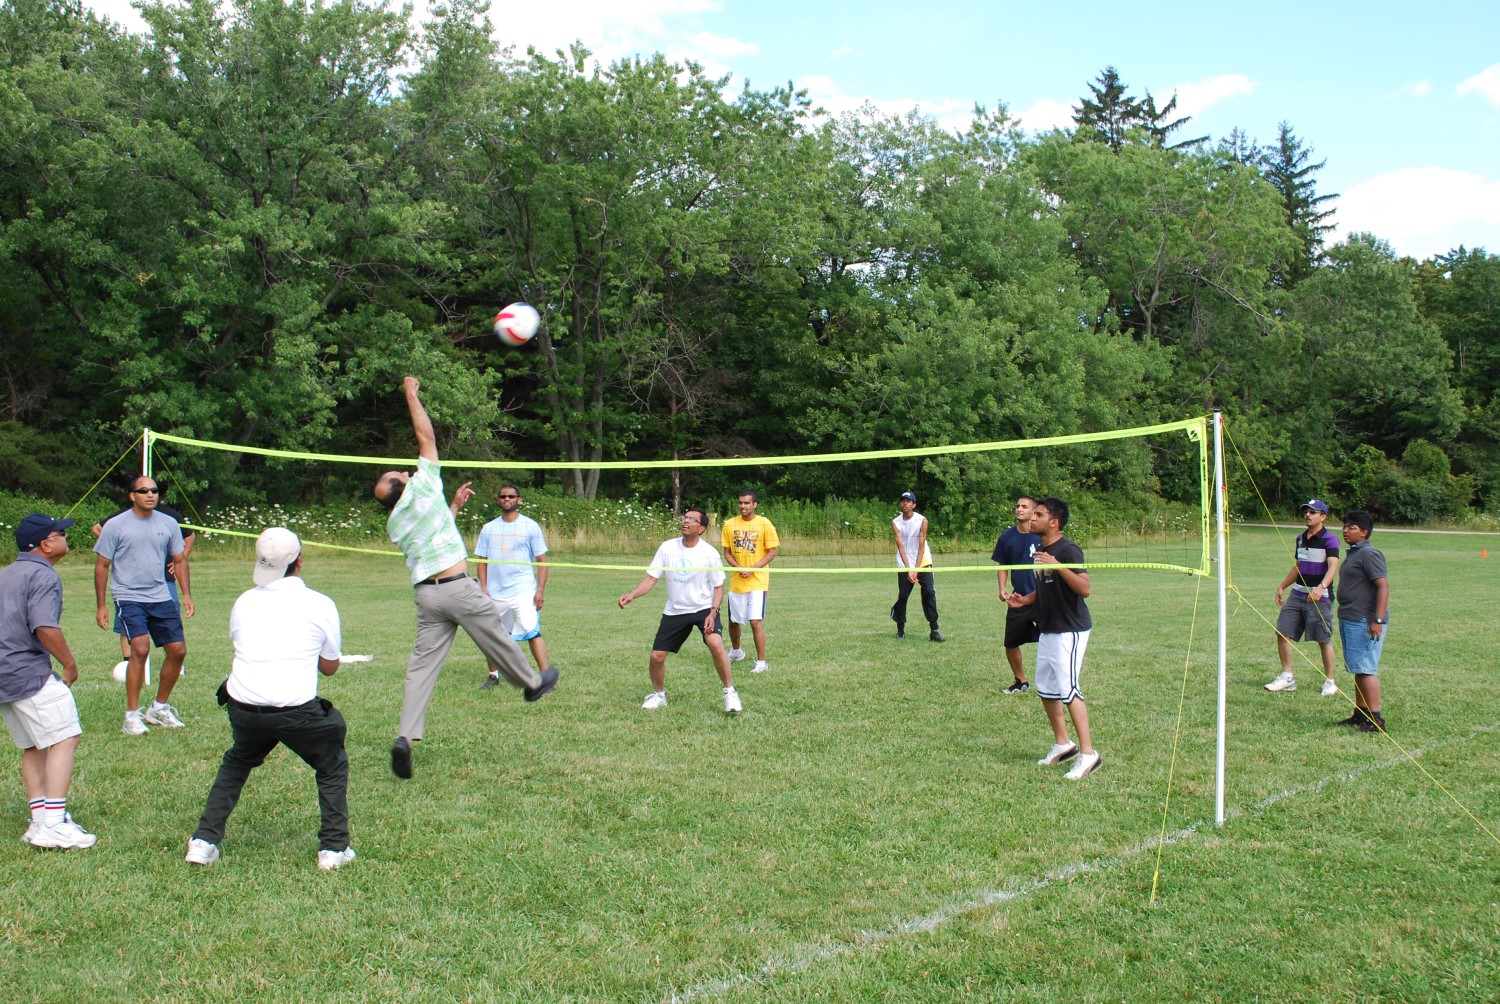 Des personnes jouent au volley-ball sur un terrain gazonné.